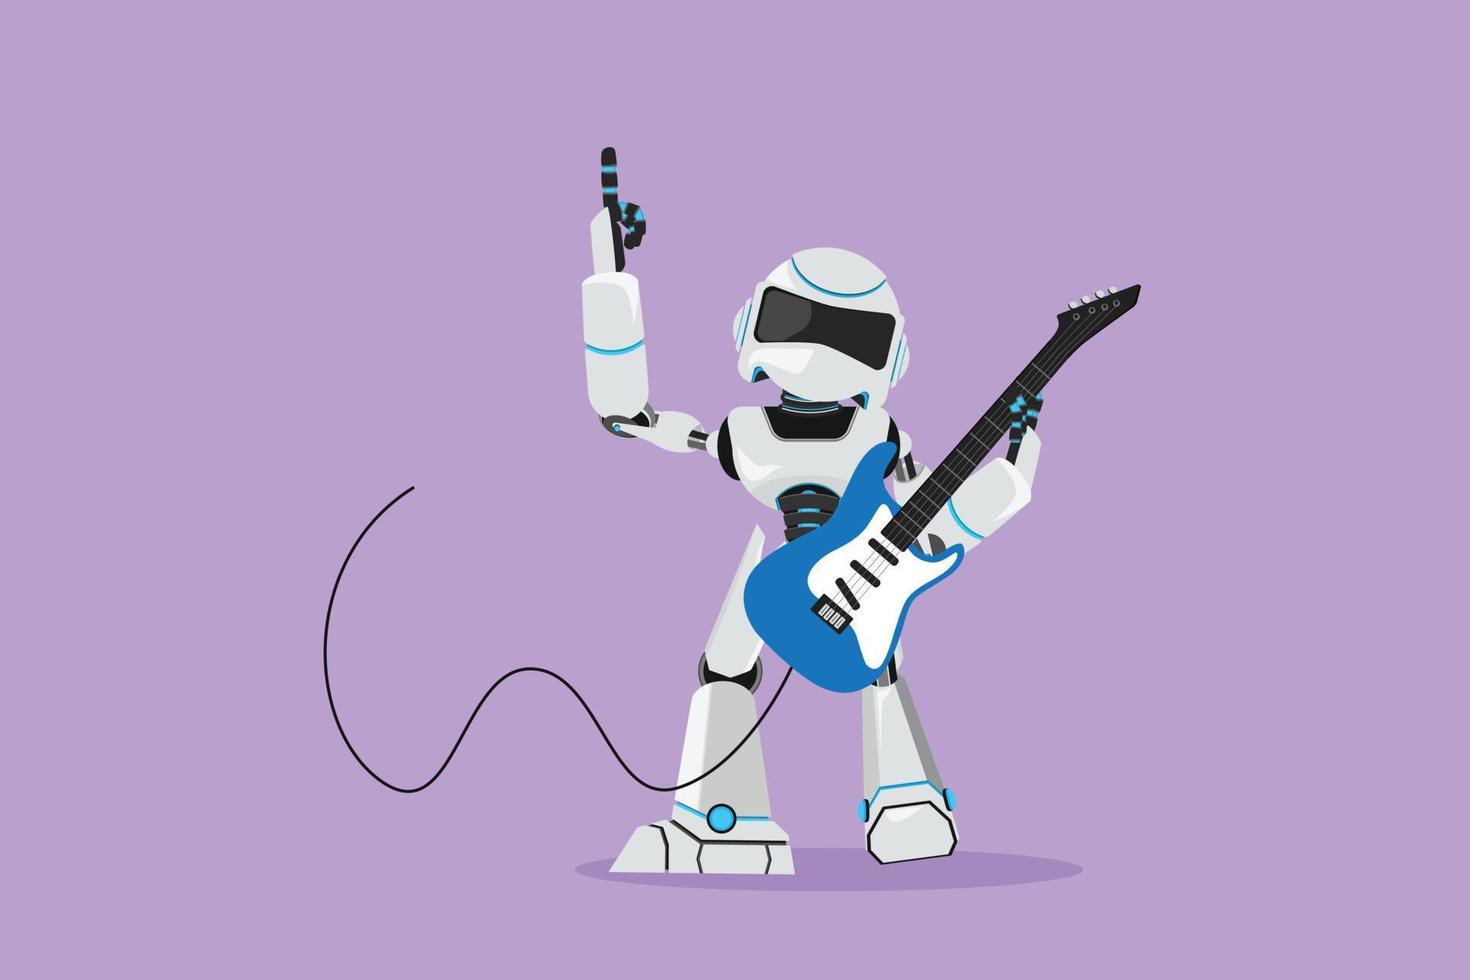 dessin de style dessin animé plat guitariste robot moderne joue de la guitare électrique sur scène. organisme cybernétique robot humanoïde. futur développement de personnage de robot. illustration vectorielle de conception graphique vecteur